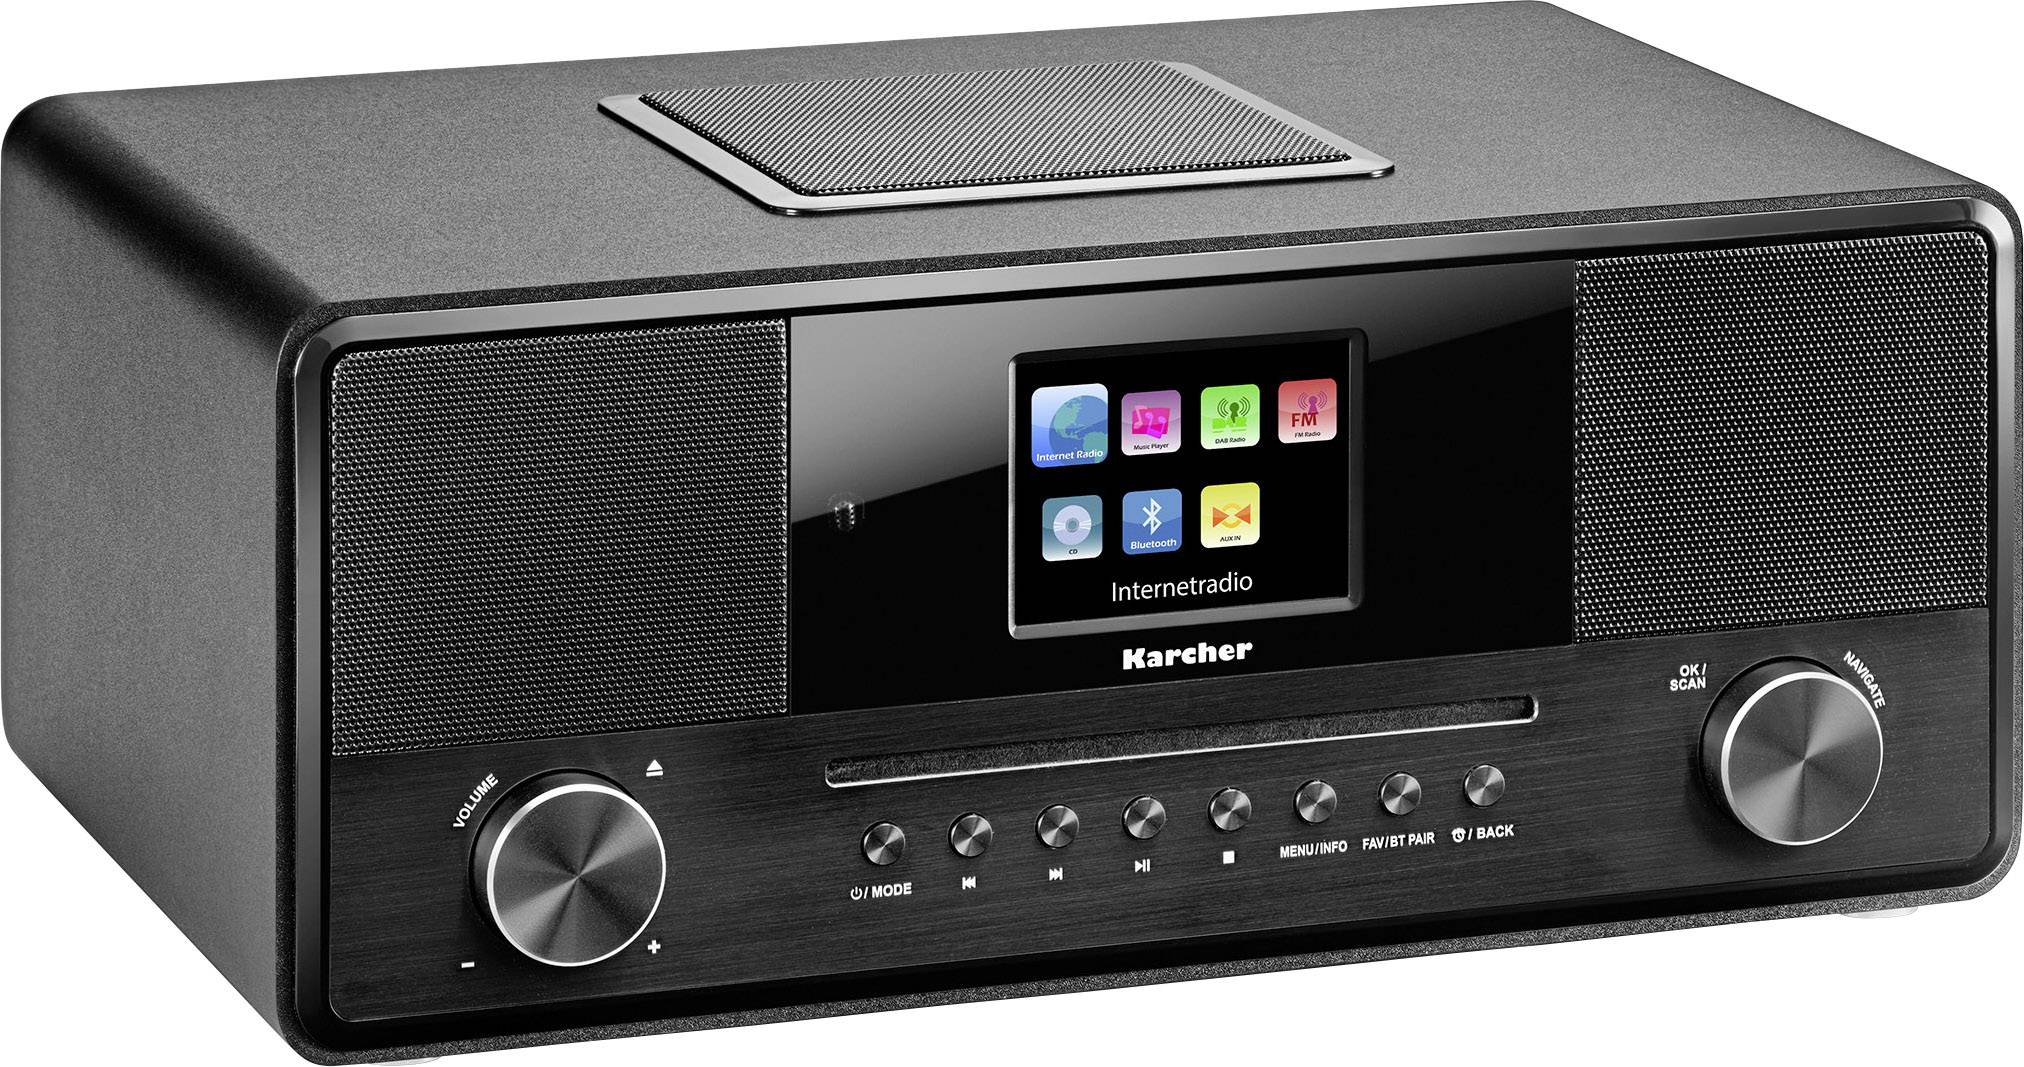 Karcher DAB 9000CDi Internet radio CD player DAB+, DAB, Internet, FM  Bluetooth, FM, Wi-Fi, USB, DAB+, DLNA, CD DLNA-com 